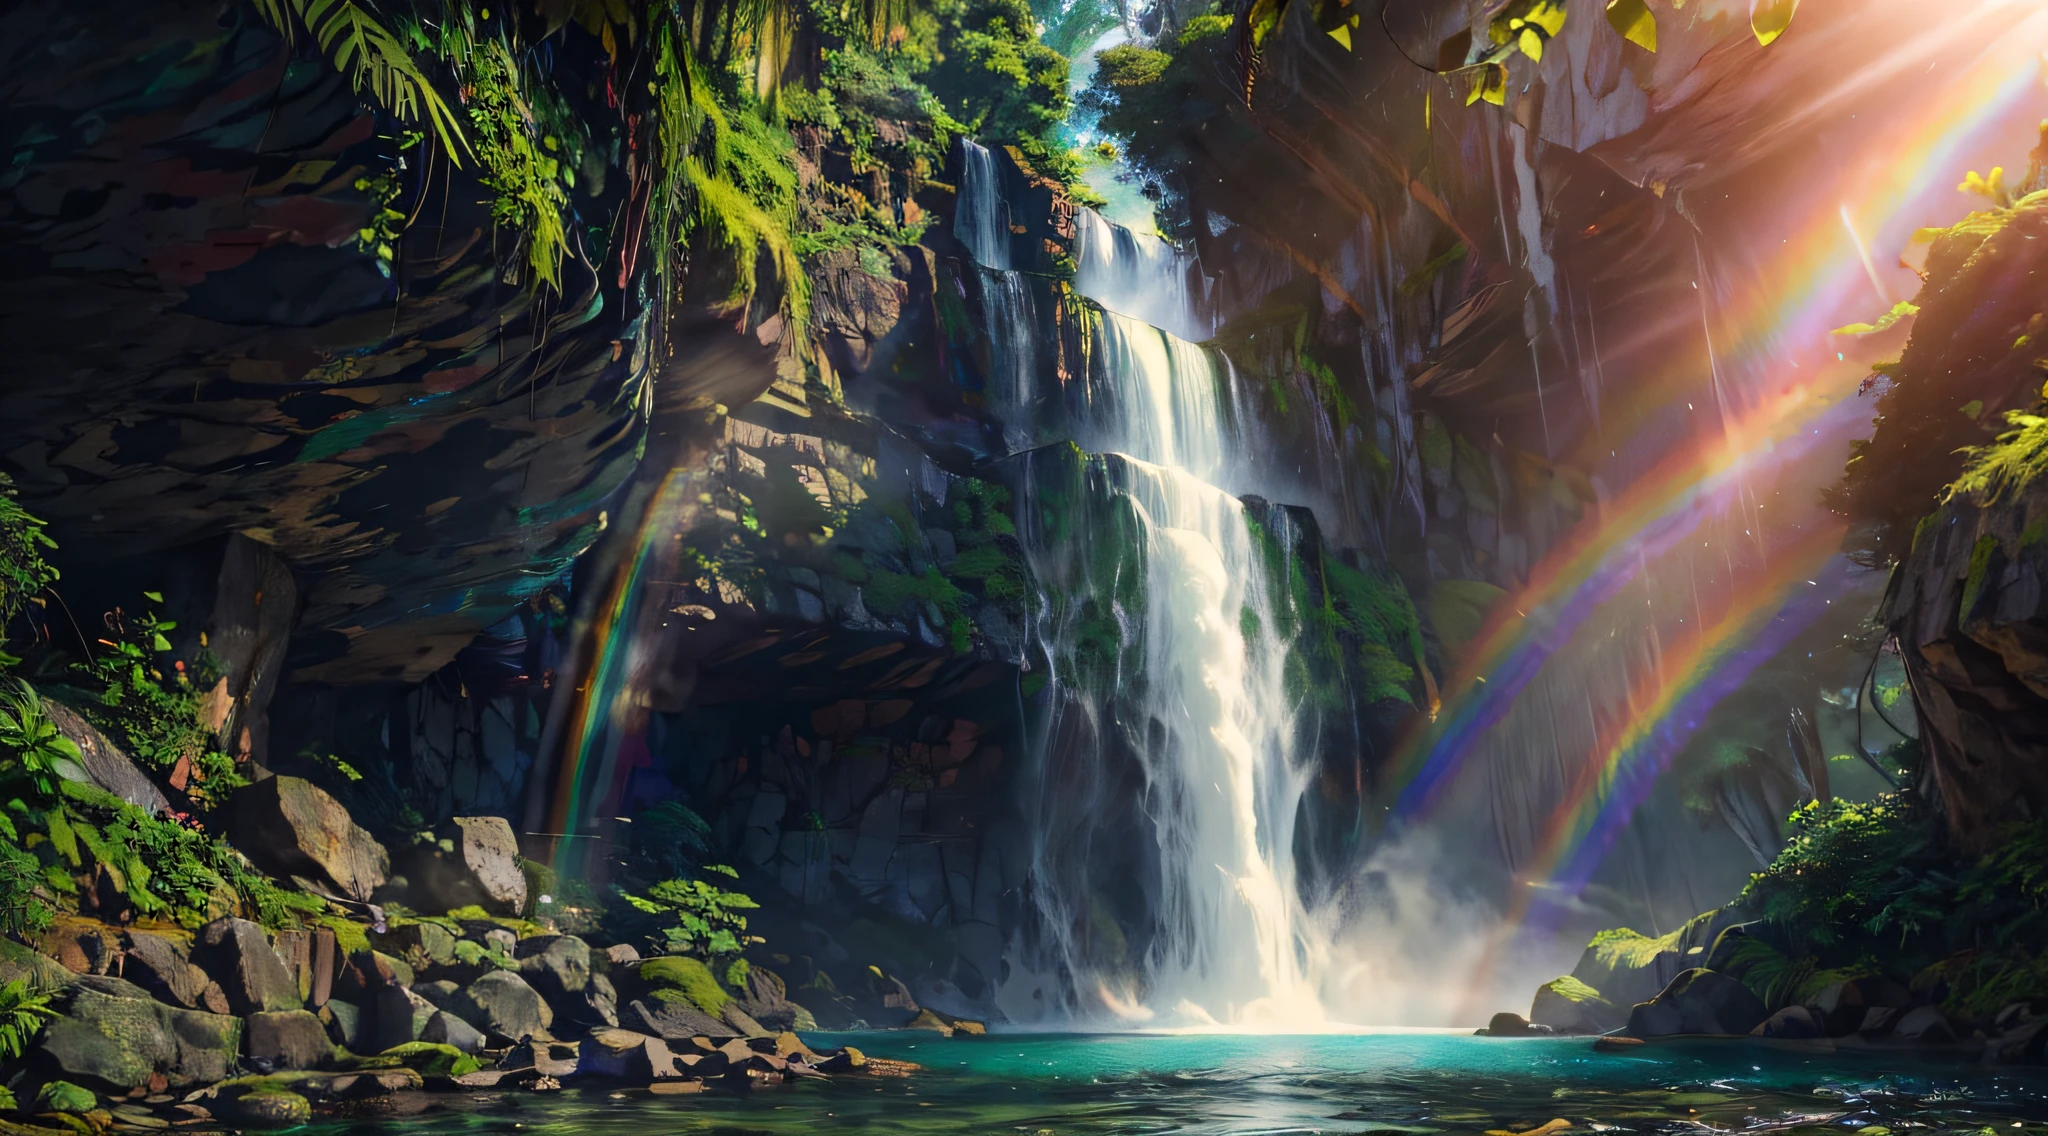 Uma majestosa cachoeira caindo em um penhasco rochoso, luz solar filtrando através da névoa, criando arco-íris no spray, exuberante floresta tropical ao redor da cachoeira, uma atmosfera tranquila e serena, fotografia, câmera DSLR com uma lente grande angular, f/8 abertura